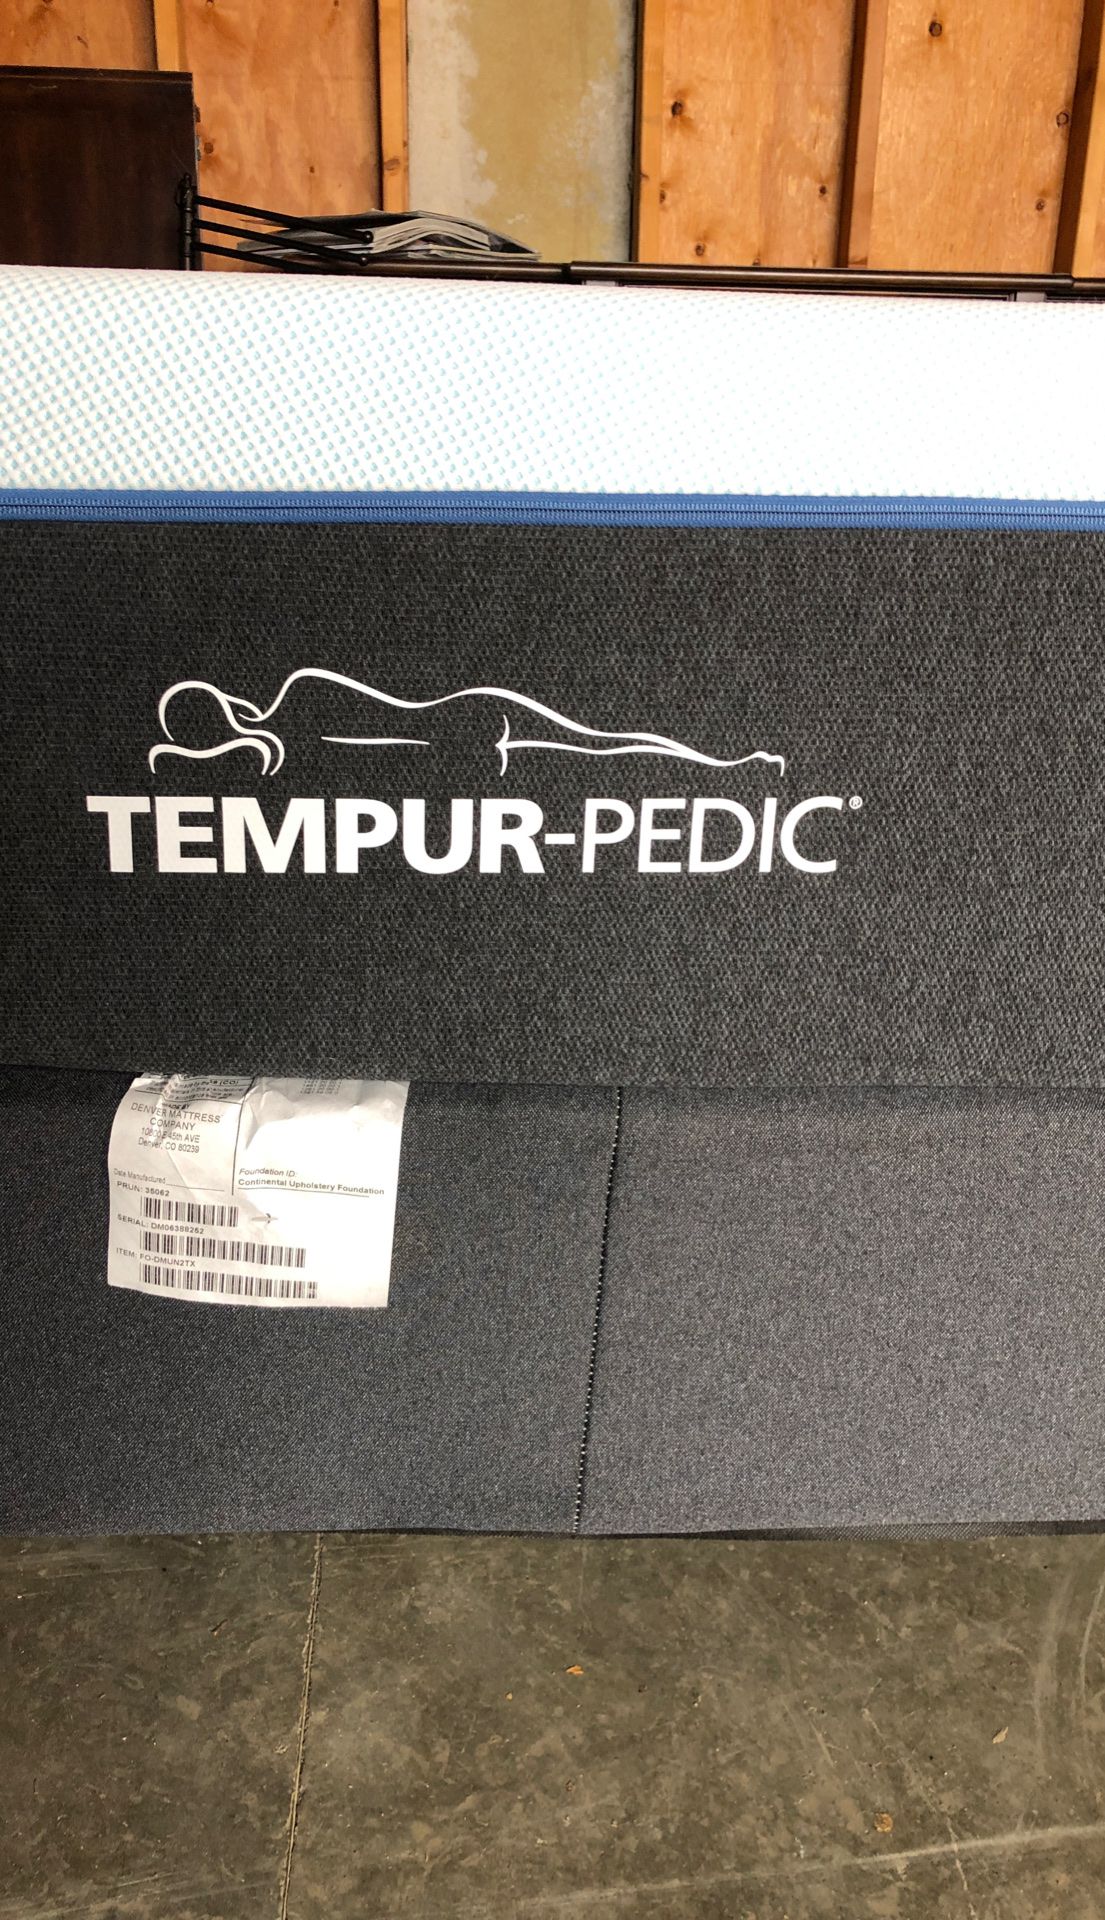 Tempur-pedic king mattress only